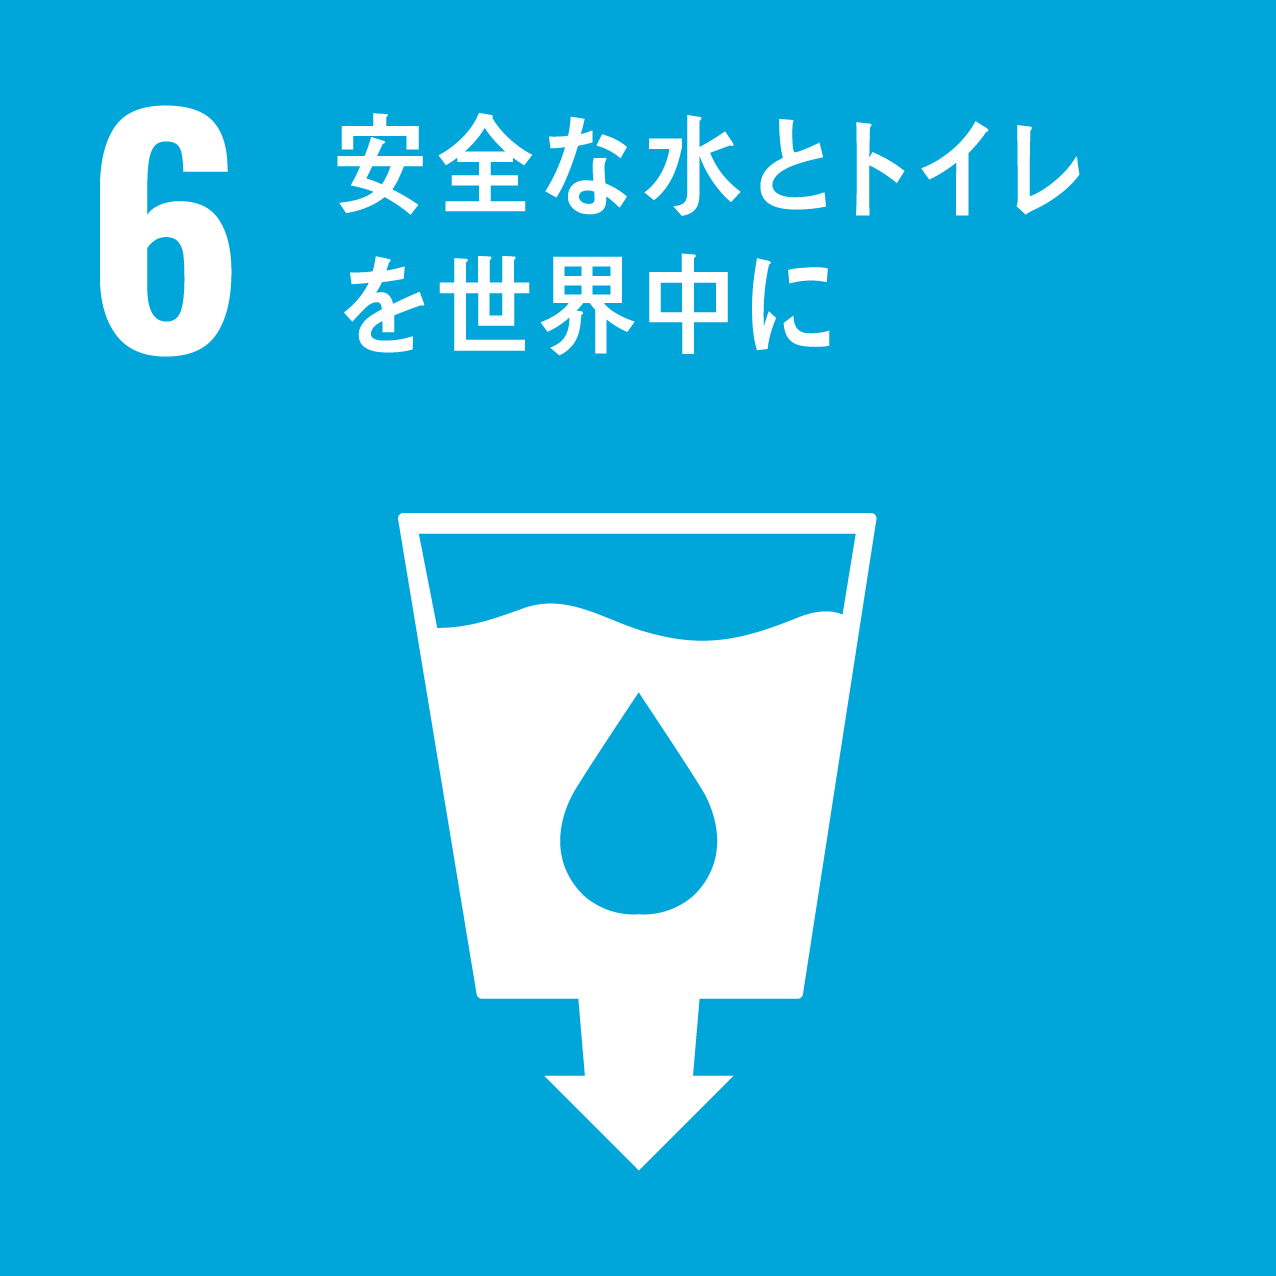 6.安全な水をトイレを世界中に